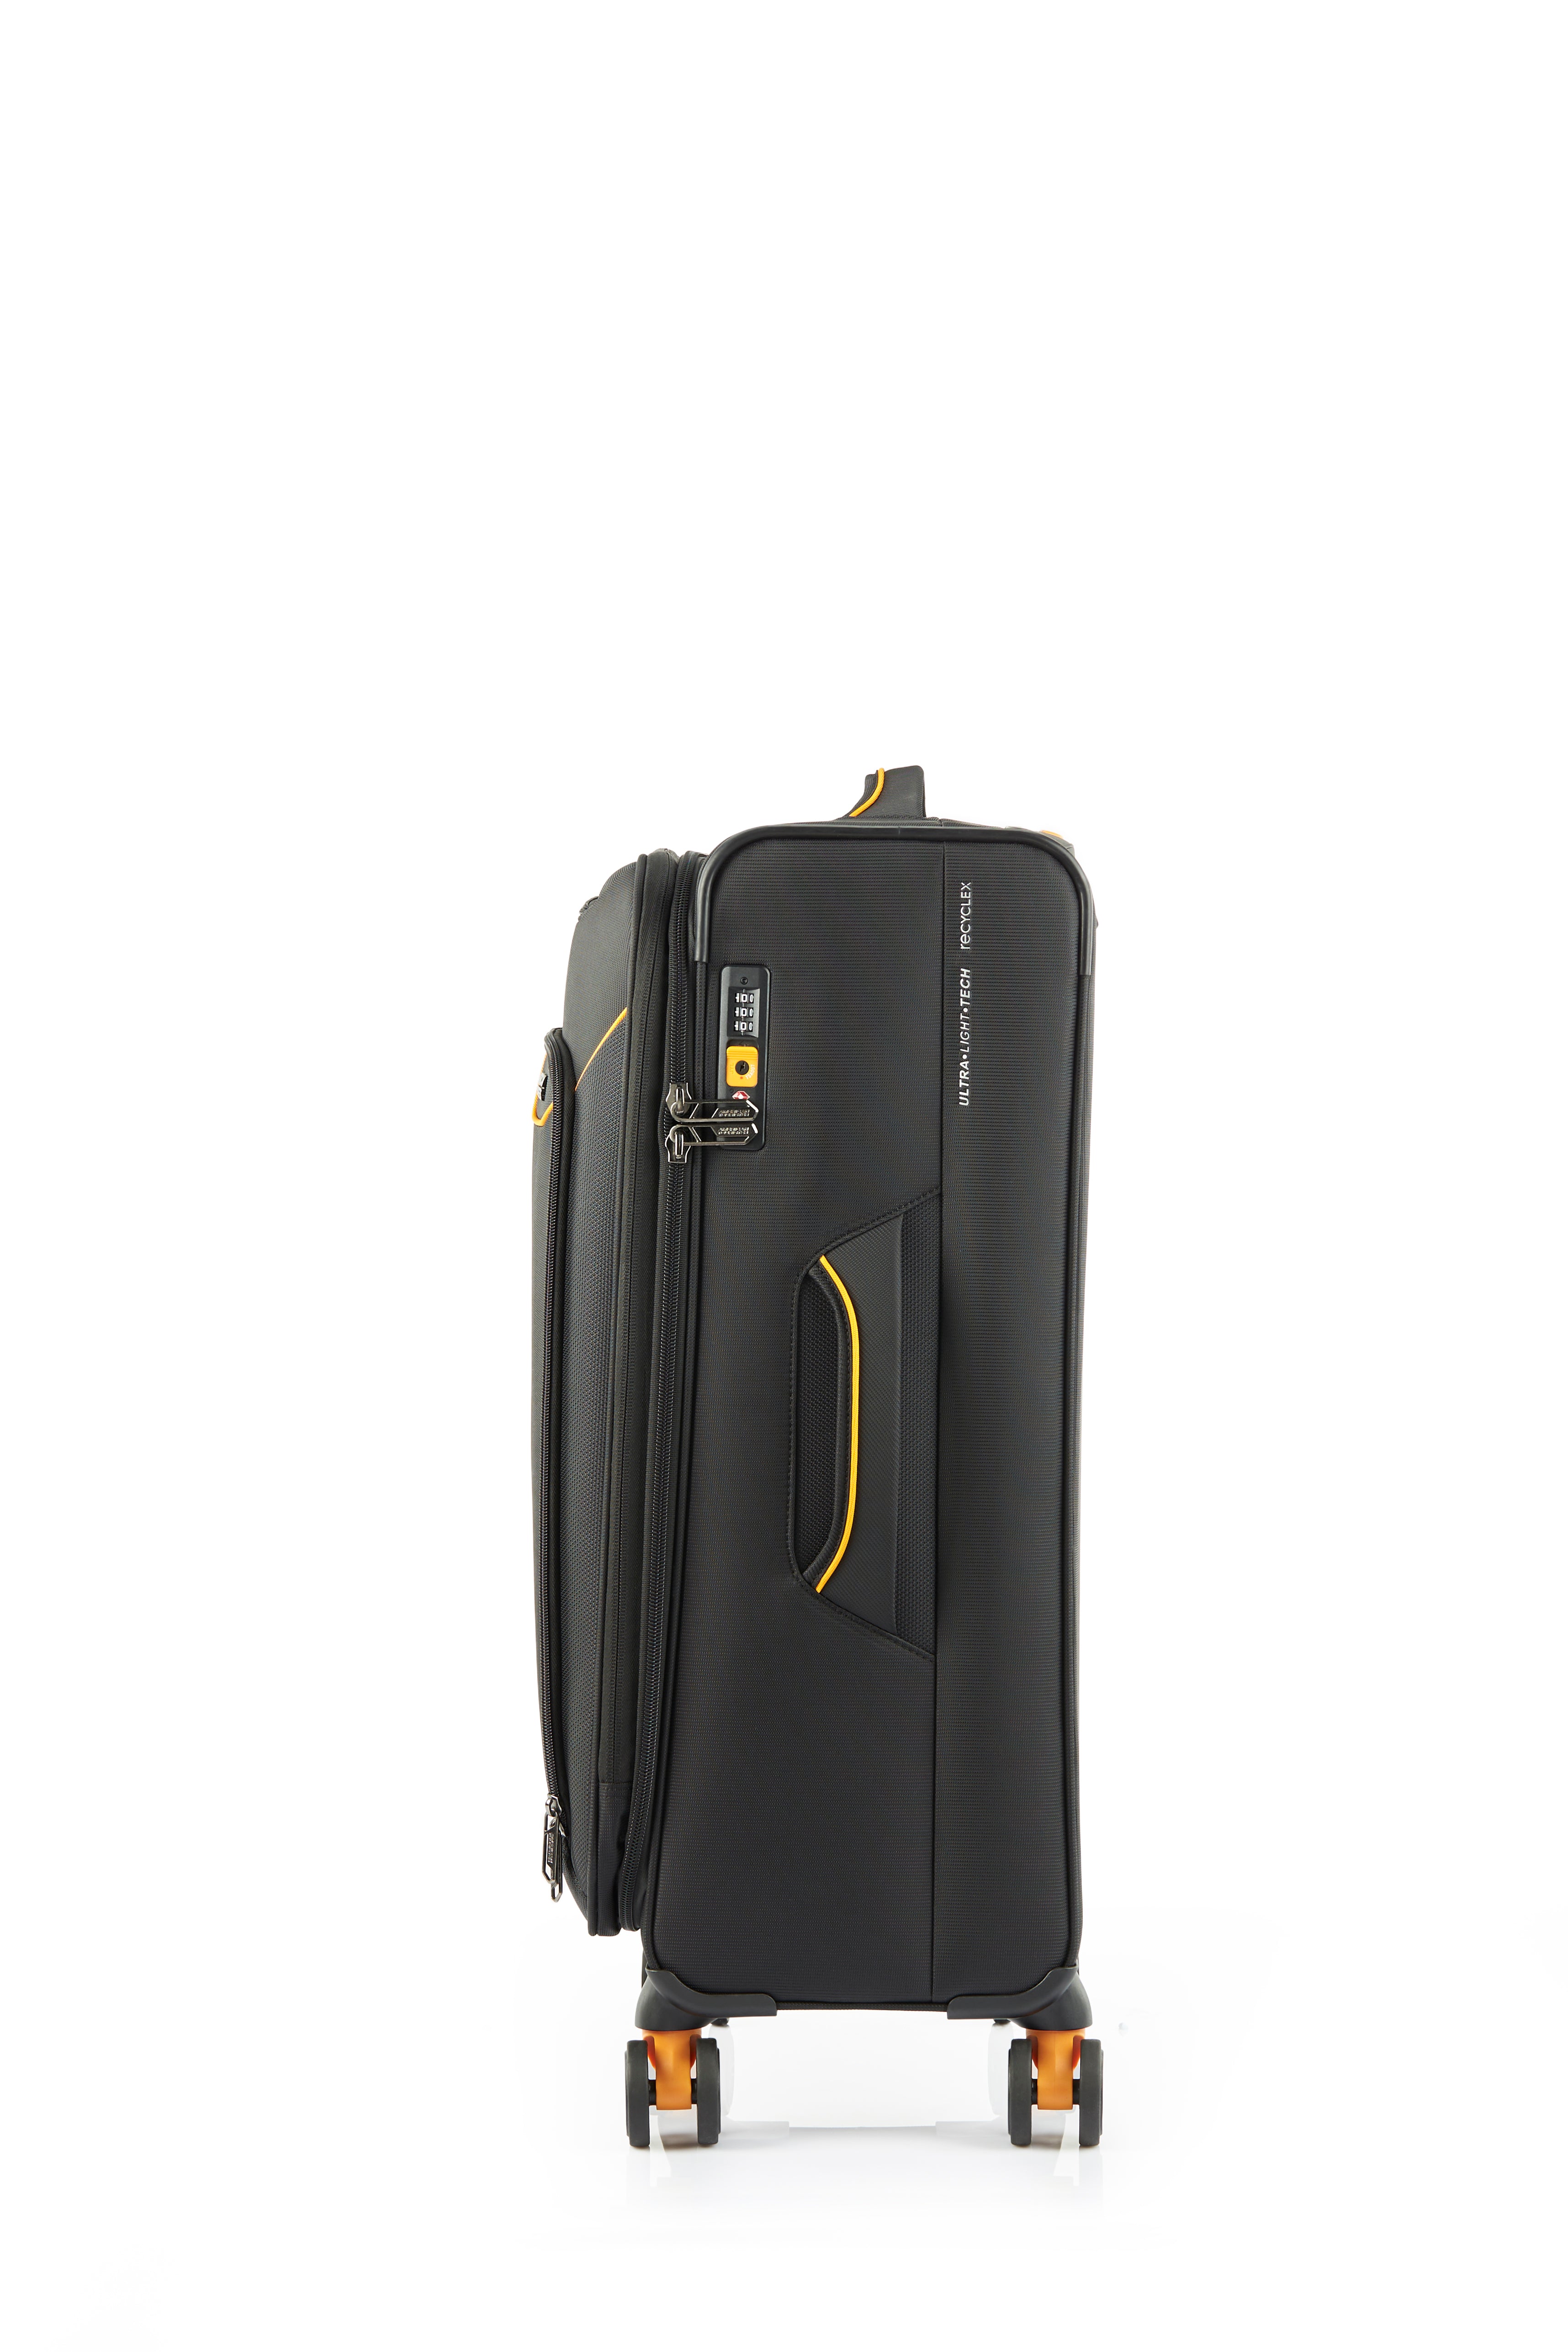 American Tourister - Applite ECO 71cm Medium Suitcase - Black/Must-4